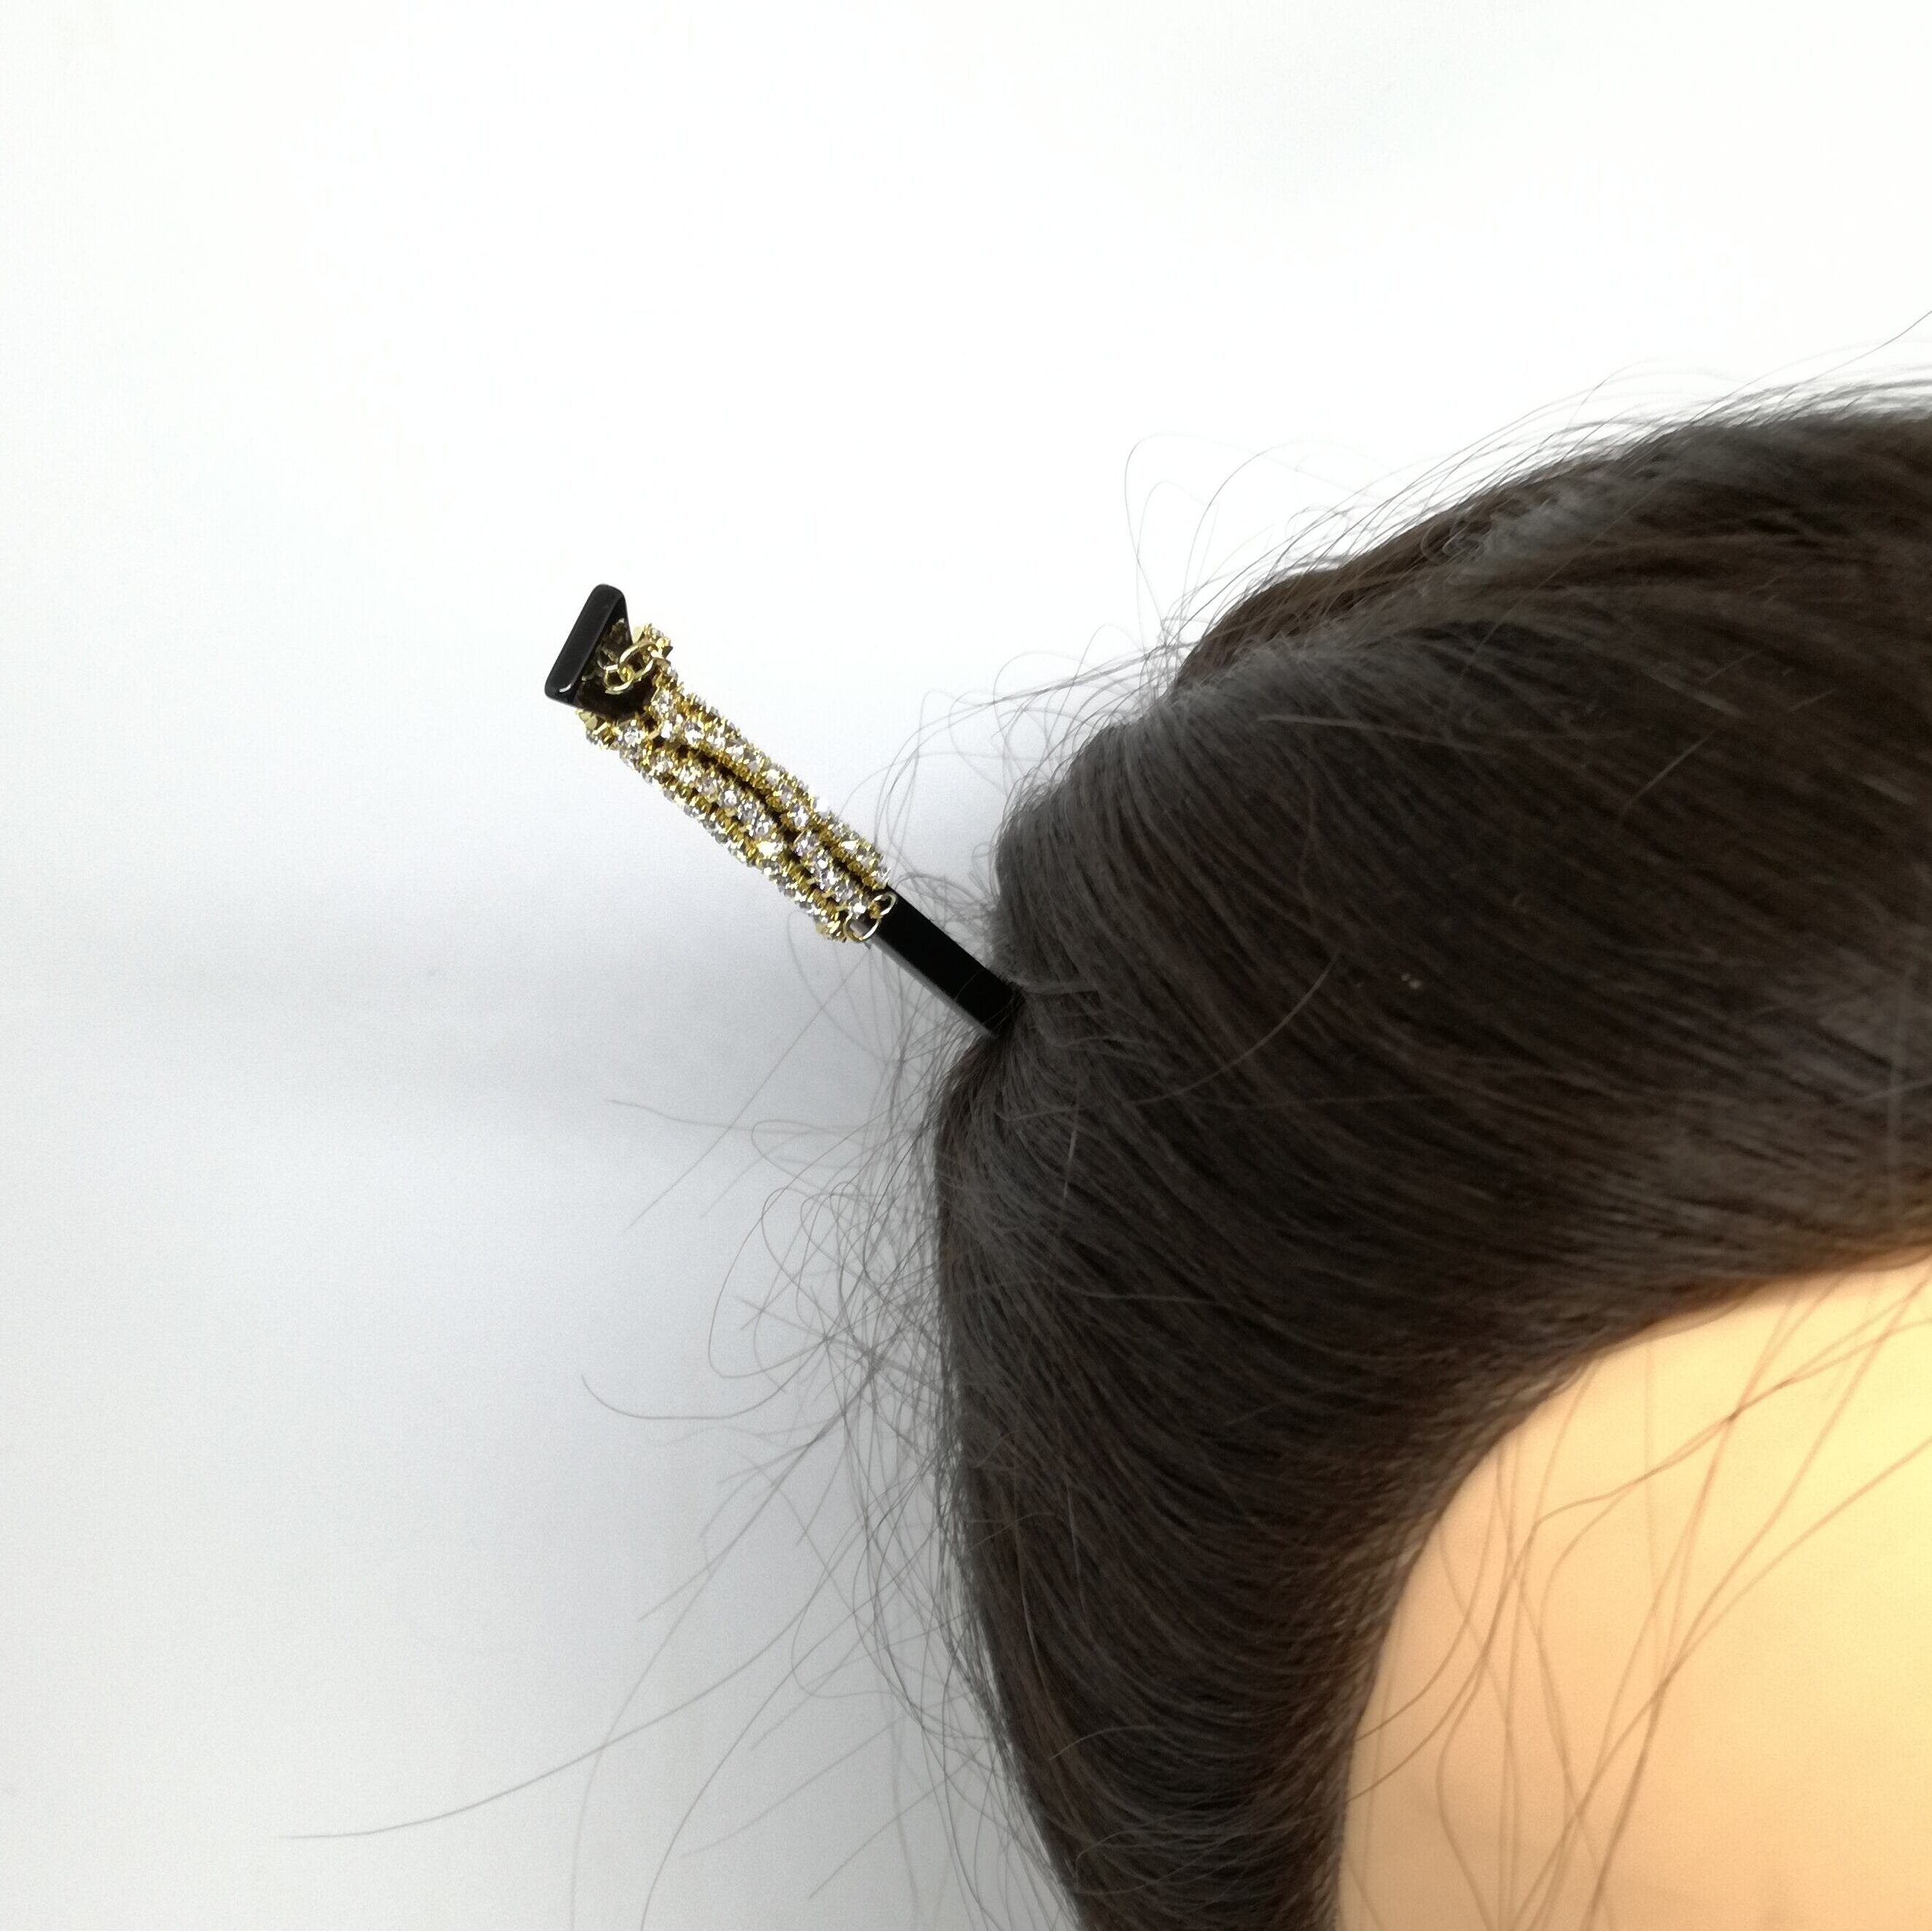 かんざし 一本 シンプル 送料無料 日本製 レディース 髪飾り キラキラ 夜会巻き お団子ヘア ヘアアレンジ ヘアセット 14702  下町の小さな飾り屋さん